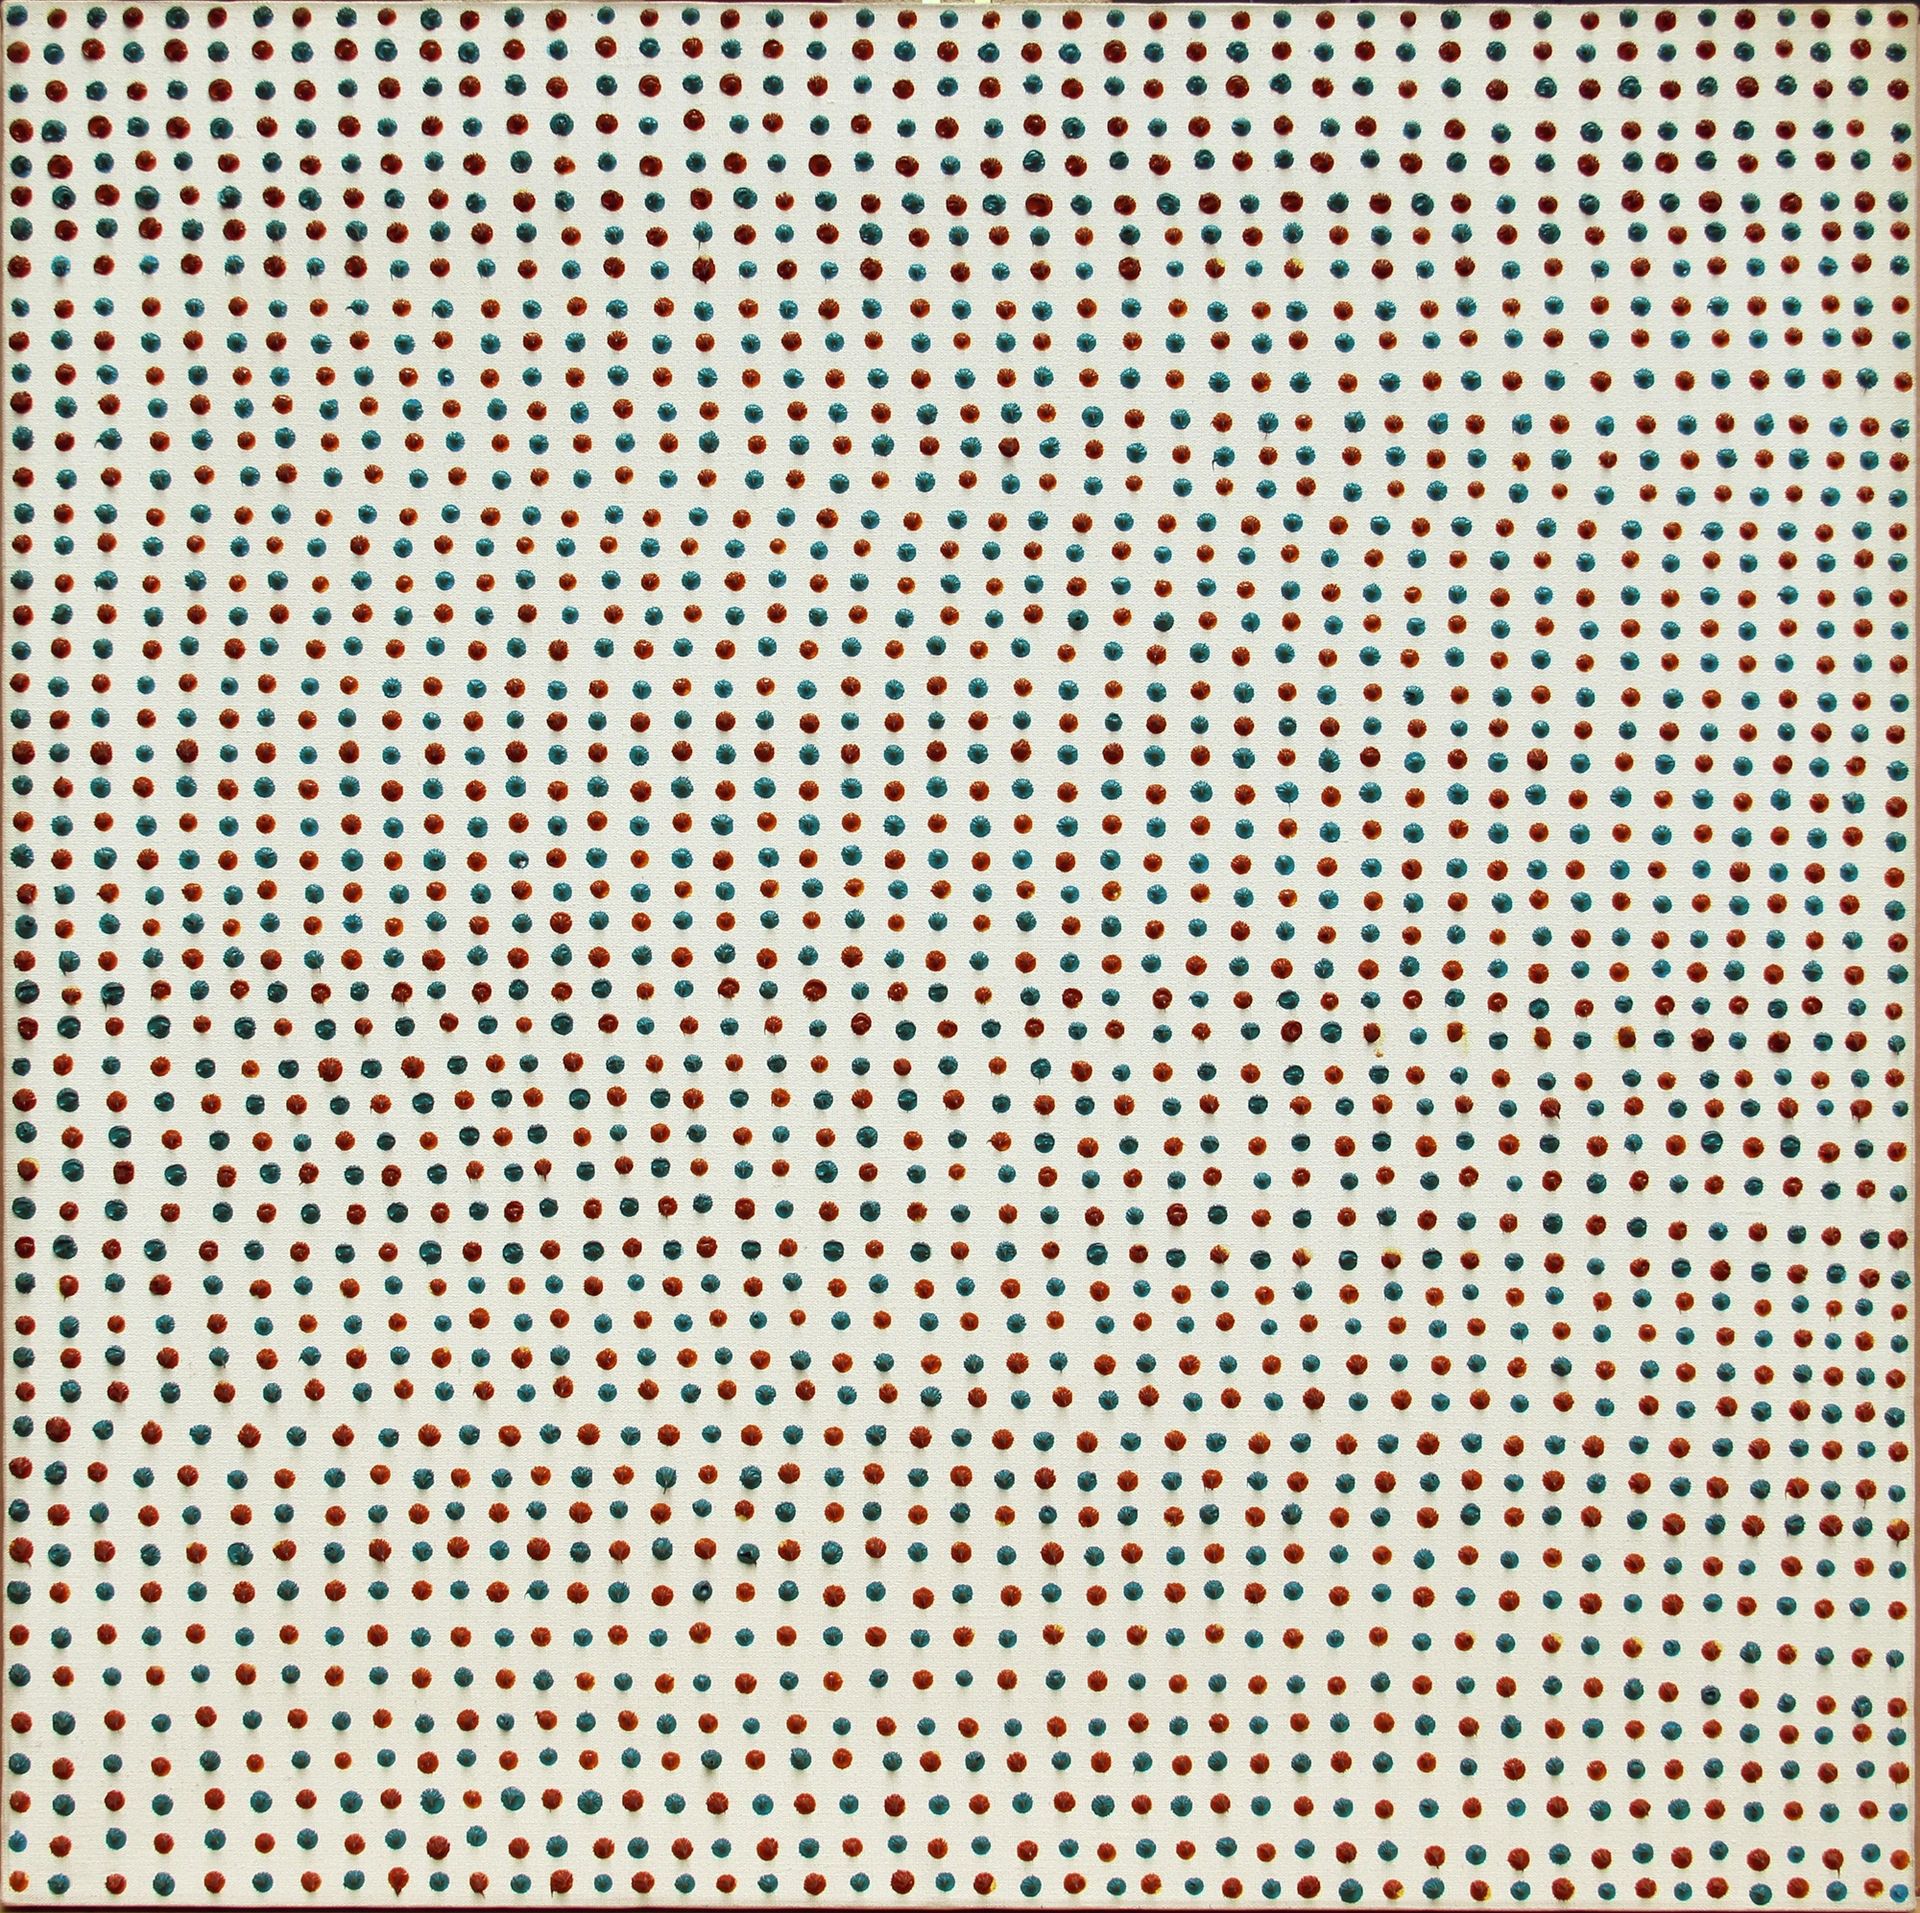 Franco BEMPORAD 2392 Punti 1975, huile sur toile, cm. 90x90



D. Astrologo, E. &hellip;